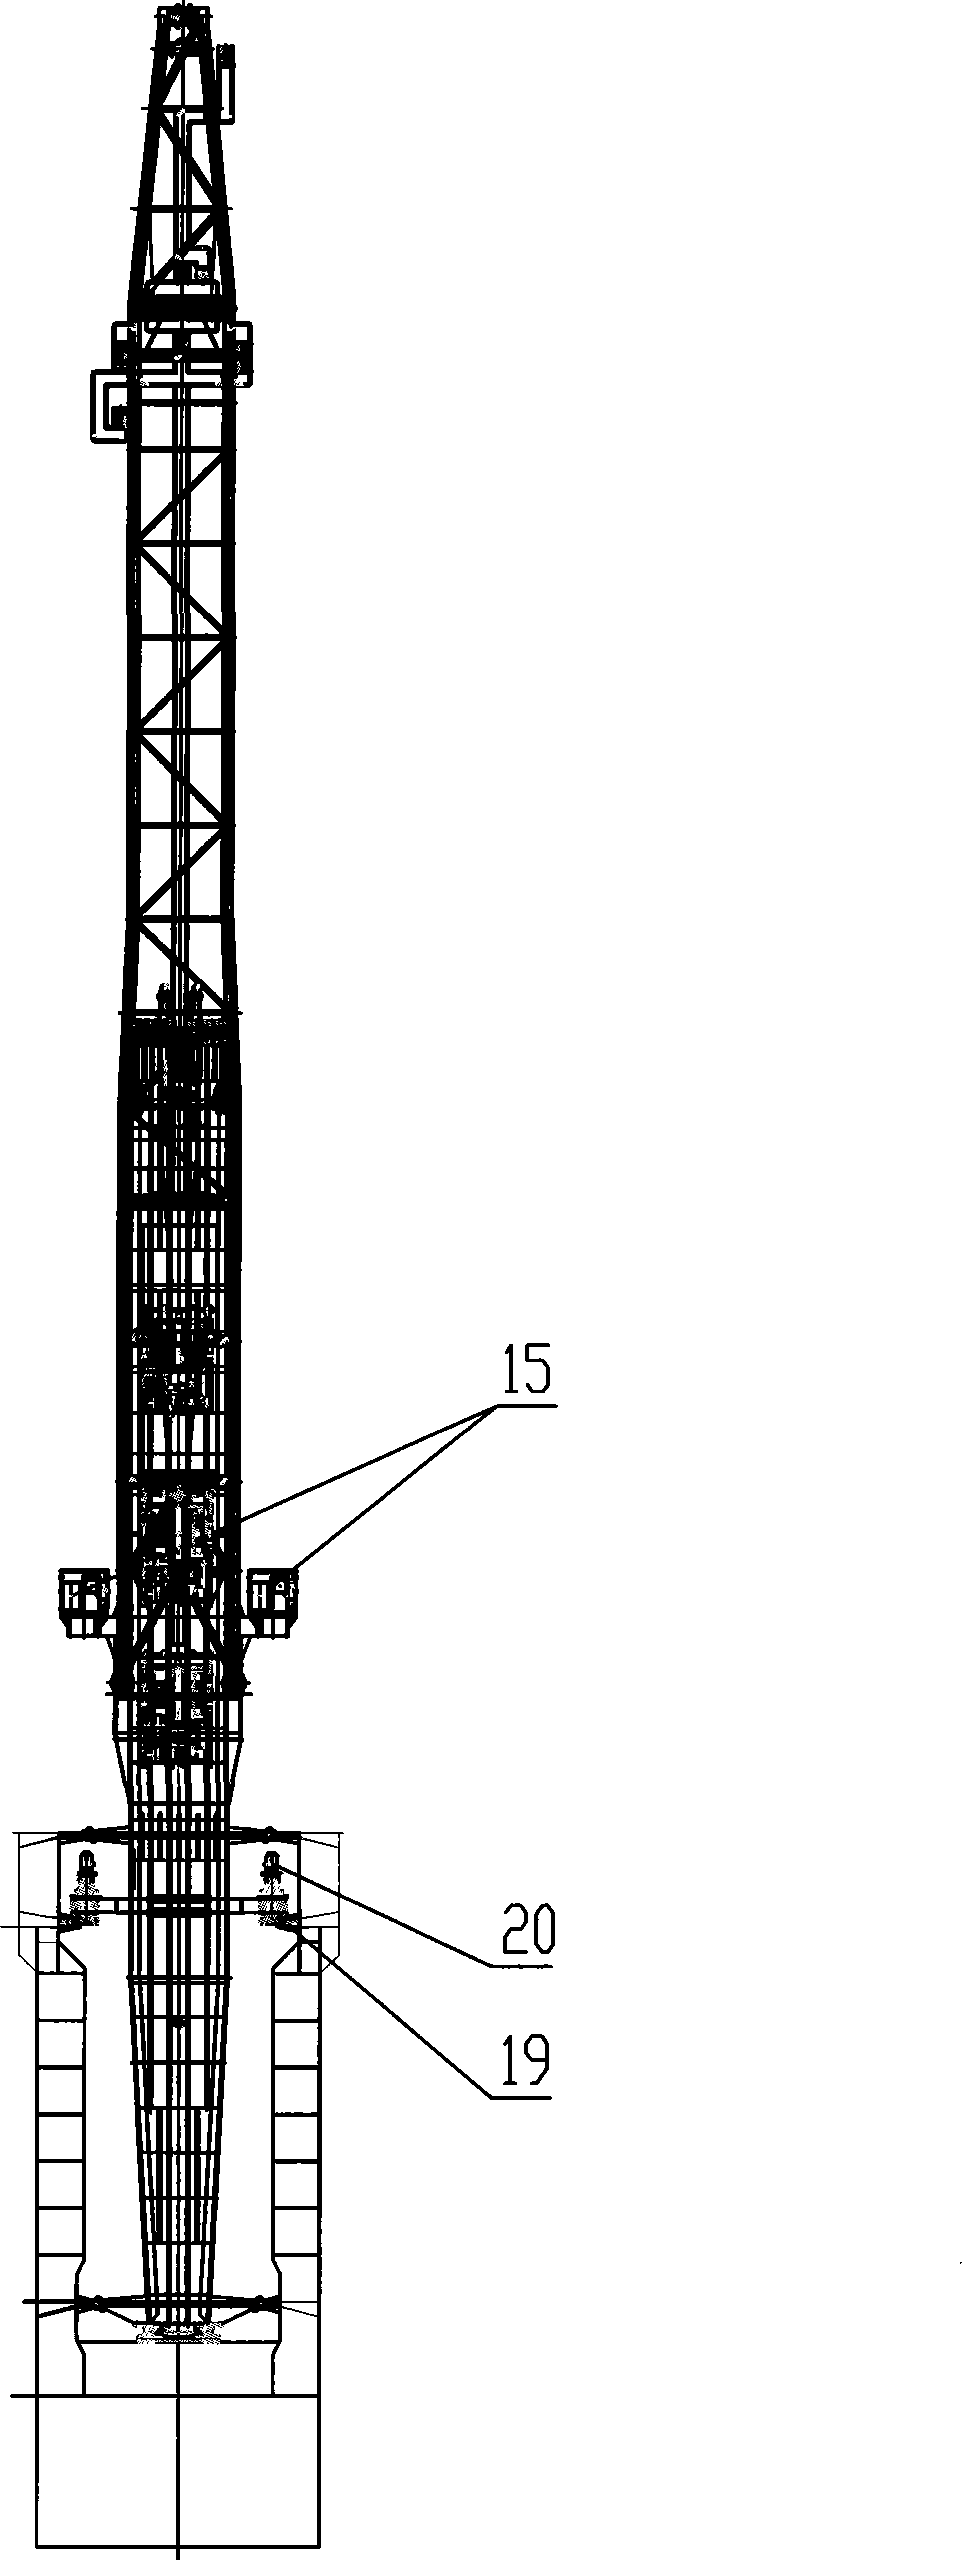 Large-scale full-turning offshore platform crane